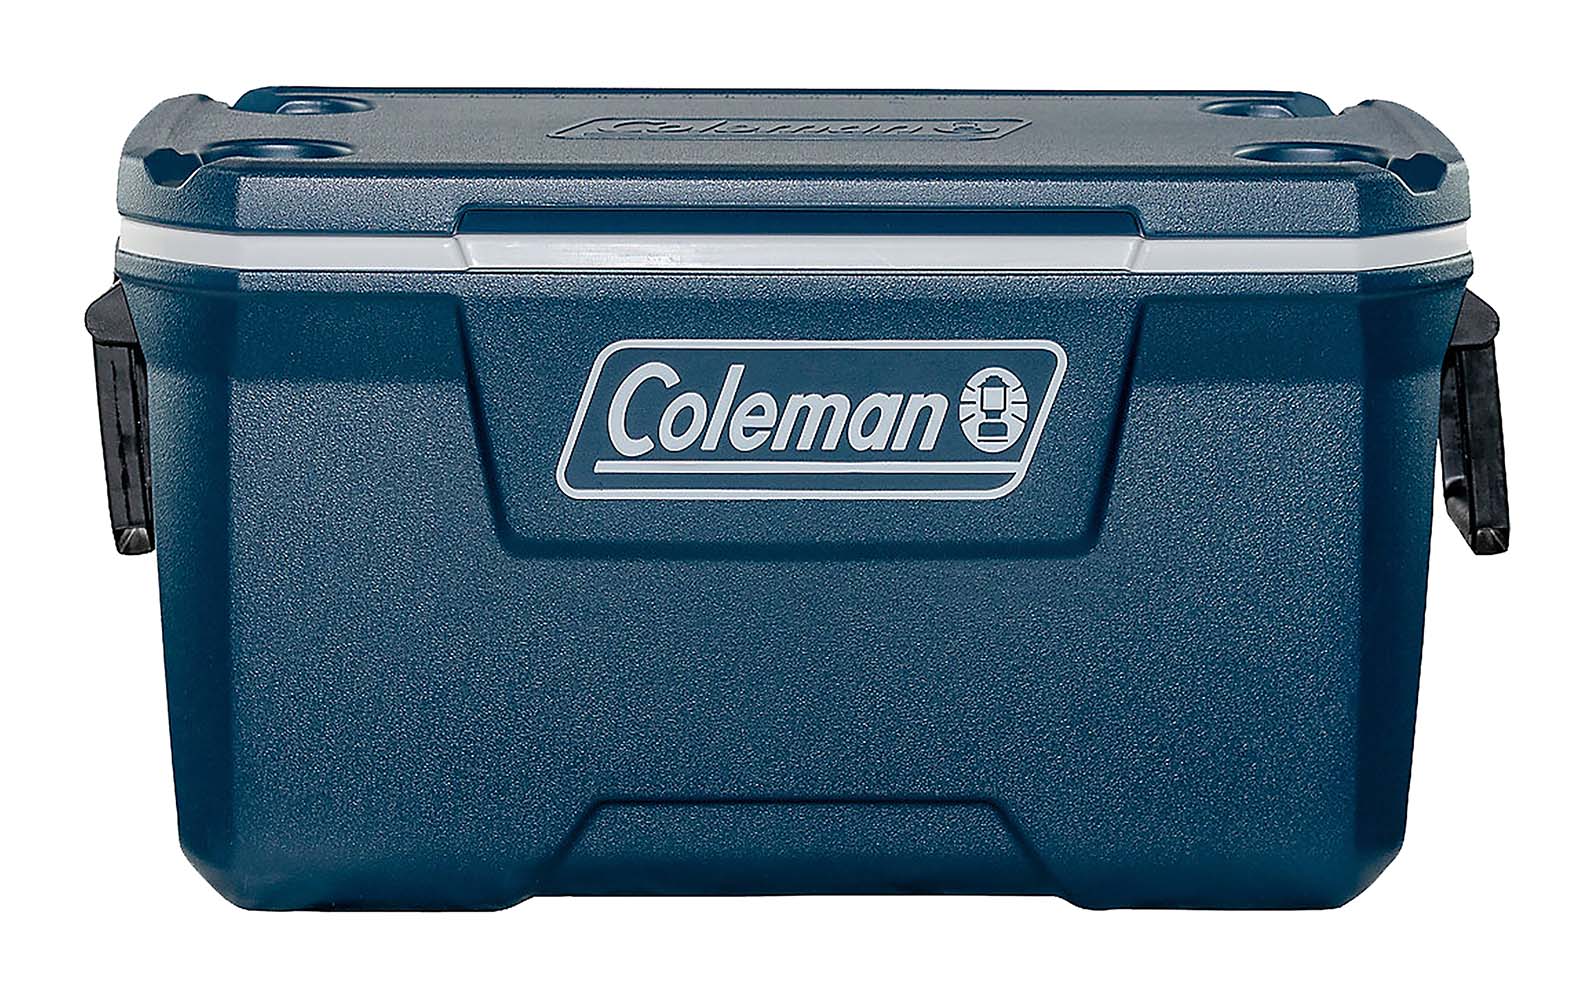 8937214 Een stijlvolle koelbox van hoge kwaliteit. Voorzien van schuimisolatie voor een hoge koelprestatie, houdt tot 5 dagen koel bij de juiste omstandigheden en in combinatie met icepacks. Biedt ruimte voor 6x een 1,5 liter fles. Het deksel beschikt over 4 bekerhouders en aan de zijkanten zit een handvat om de koelbox makkelijk te tillen of te dragen.De Coleman 70 QT Xtreme Cooler kan voor diverse gelegenheden gebruikt worden. Denk bijvoorbeeld aan een barbecue, een strand uitje, tijdens het werken of tijdens het kamperen. Deze koelbox is er eentje van de nieuwste Xtreme collectie. Deze box is ontworpen om extra grote hoeveelheden drinken en eten koud te houden. Ideaal voor als u bijvoorbeeld met vrienden of familie gaat kamperen.